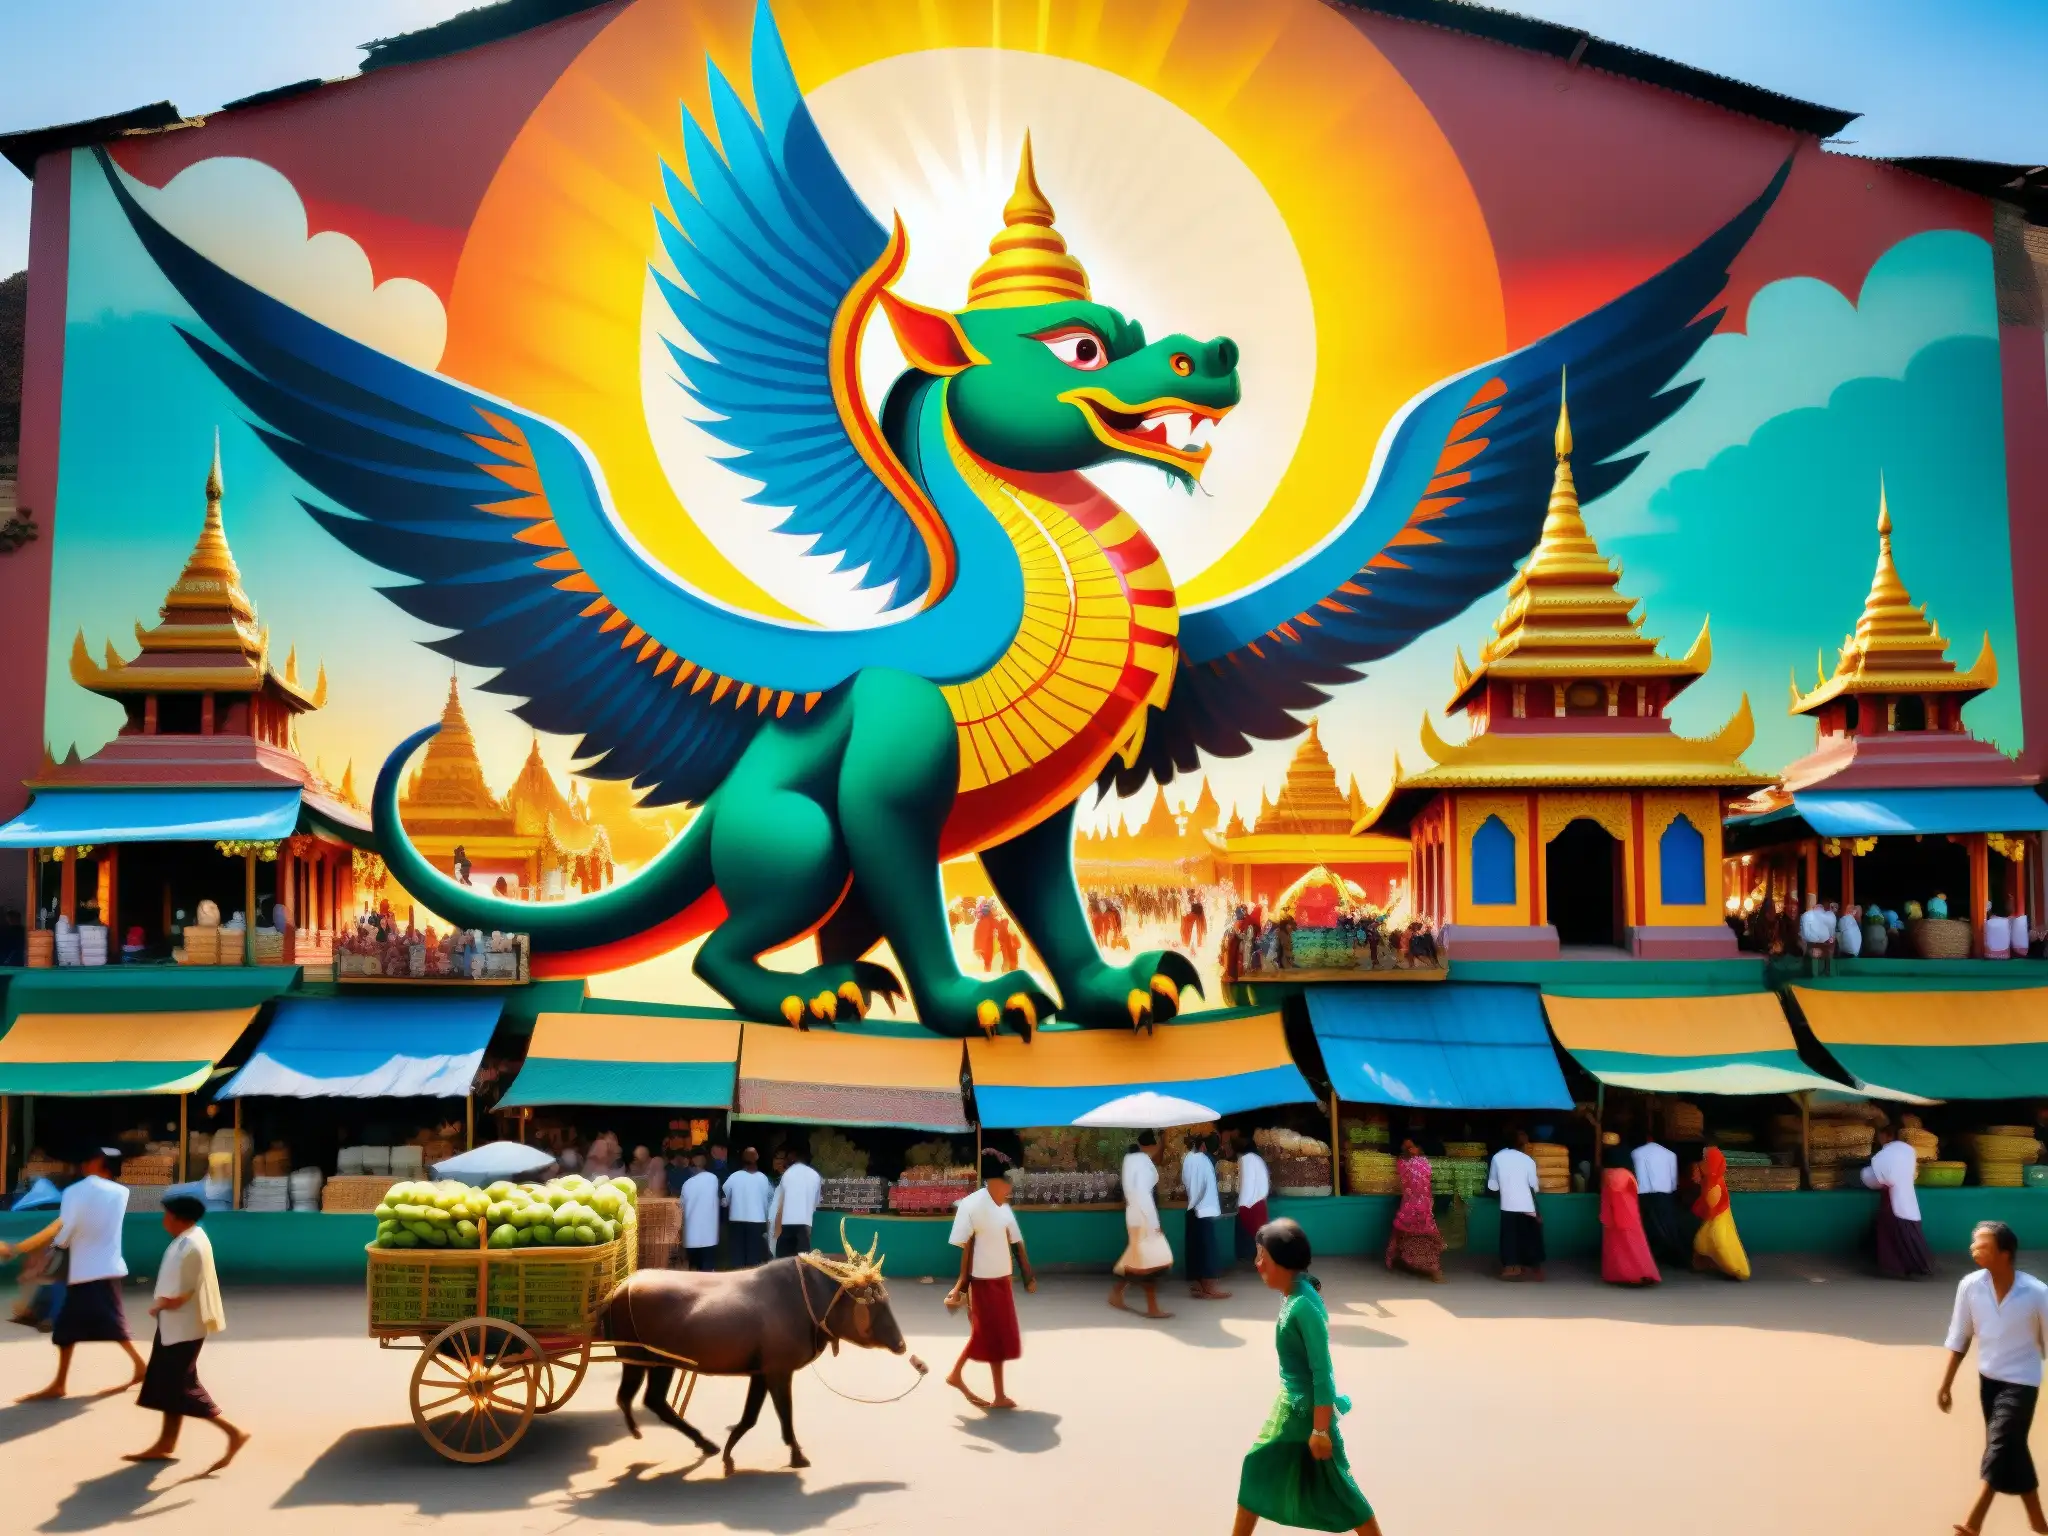 Una bulliciosa feria en Myanmar, con colores vibrantes y una pintoresca representación de 'La bestia alada en Myanmar'